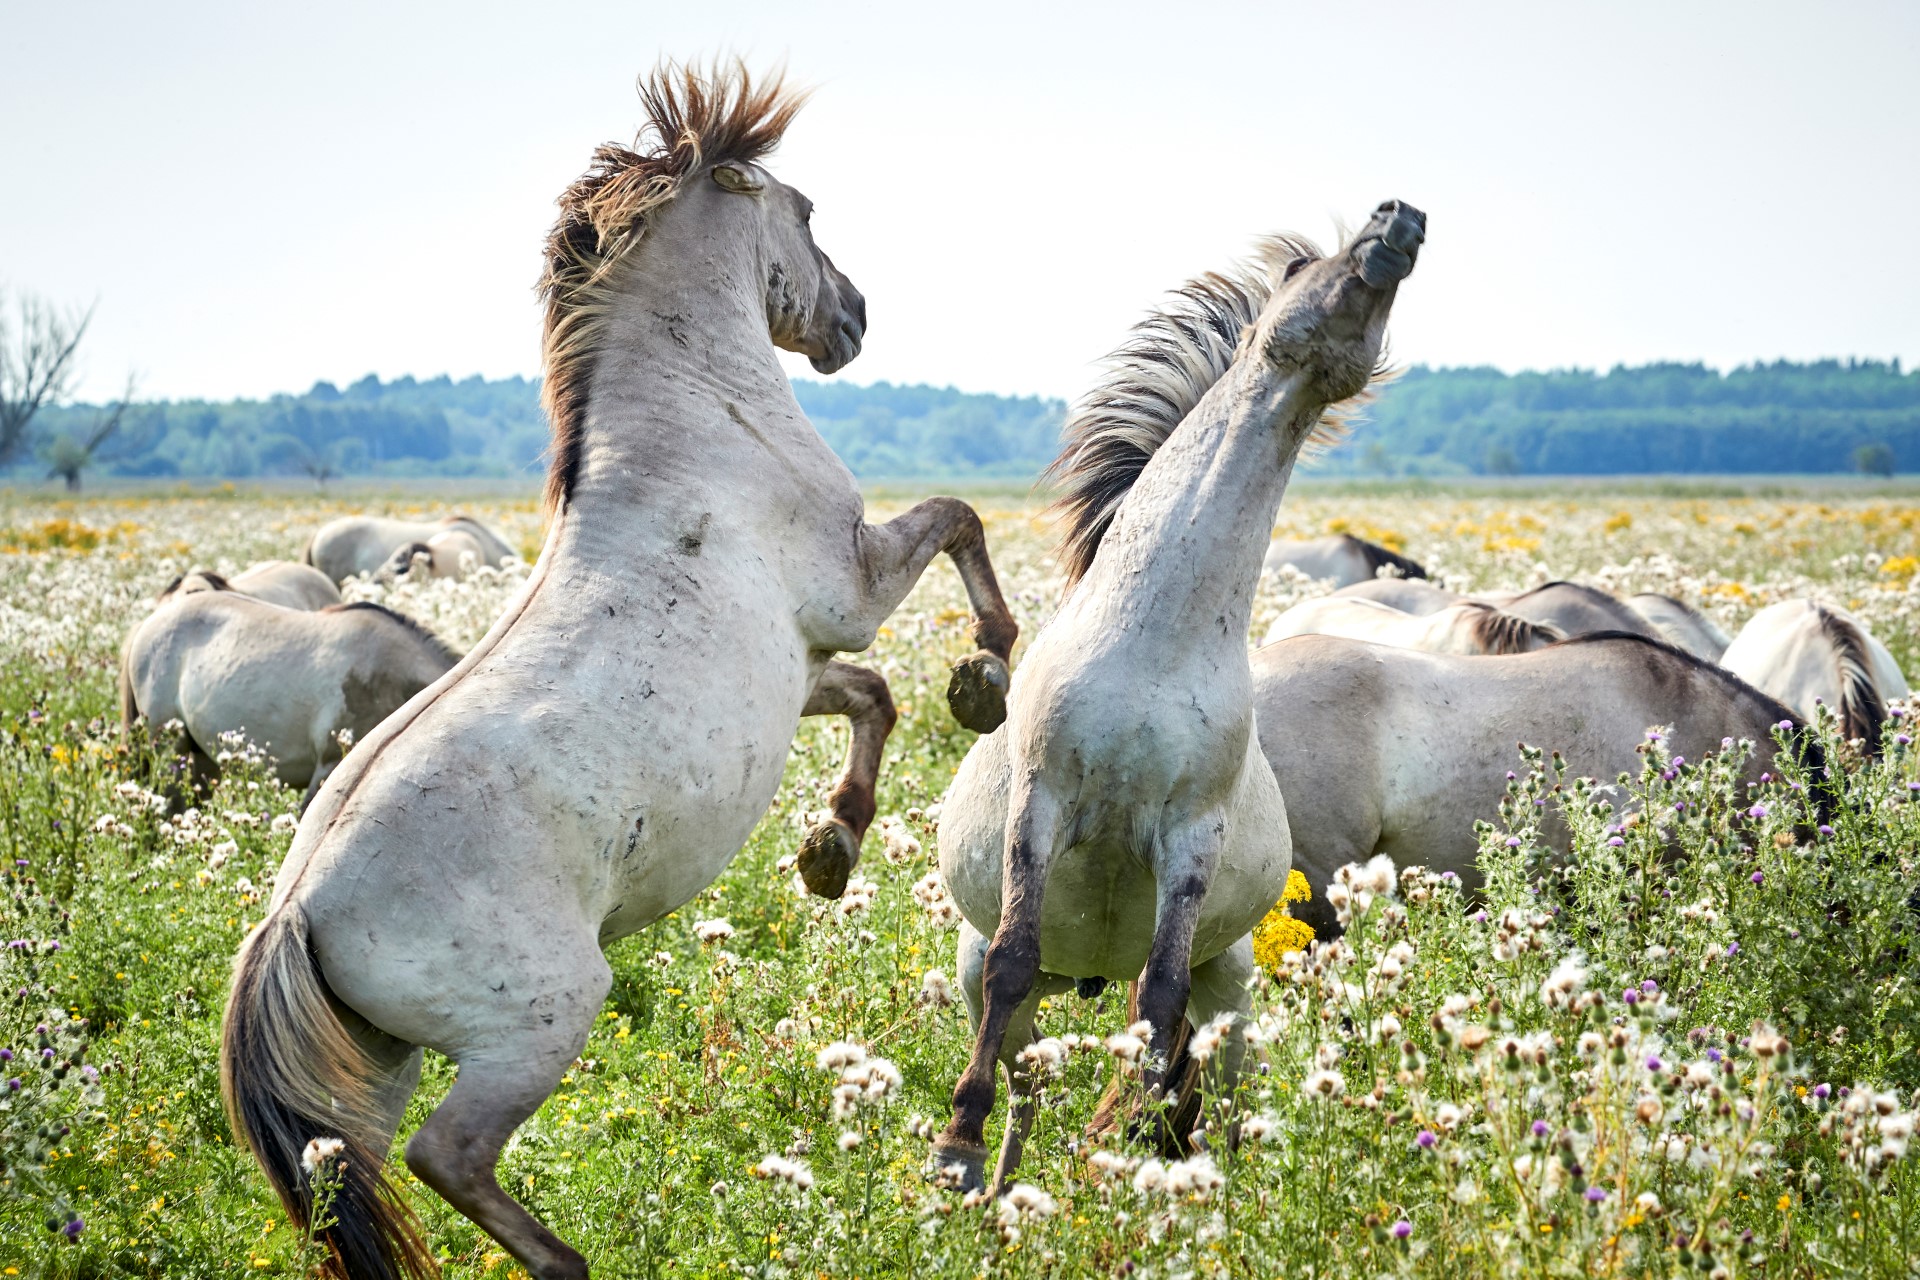 Oostvaarder Plassen mit wilden Pferden. Photo Credit: llWrite